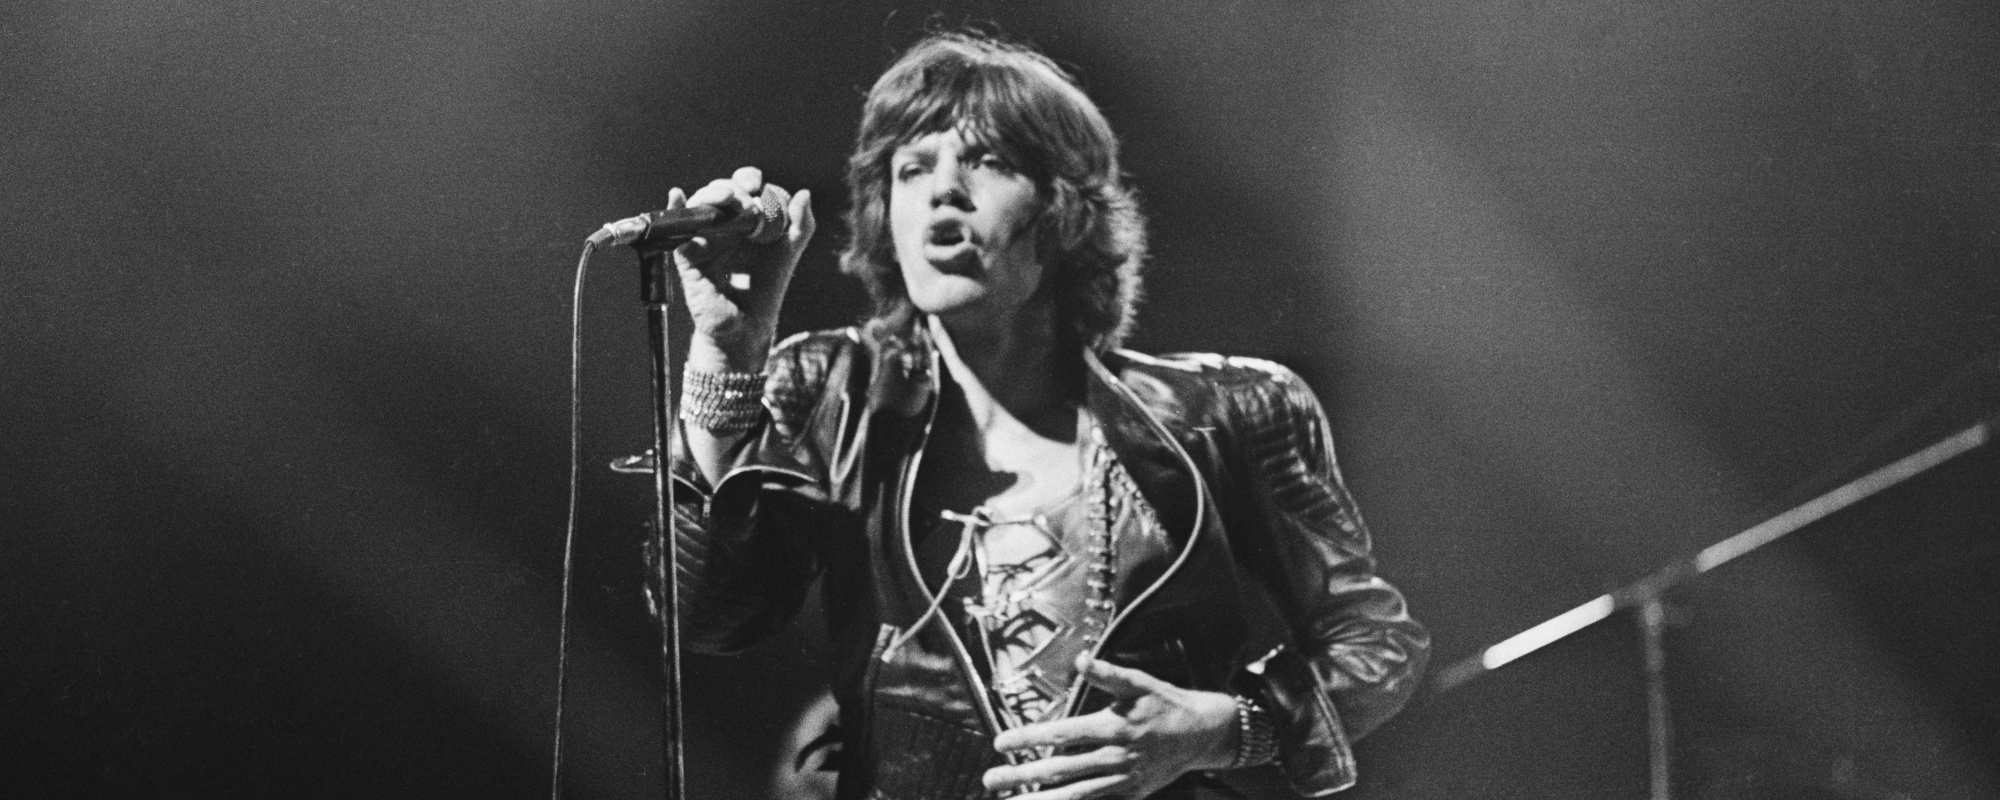 3 Musicians Mick Jagger Dislikes